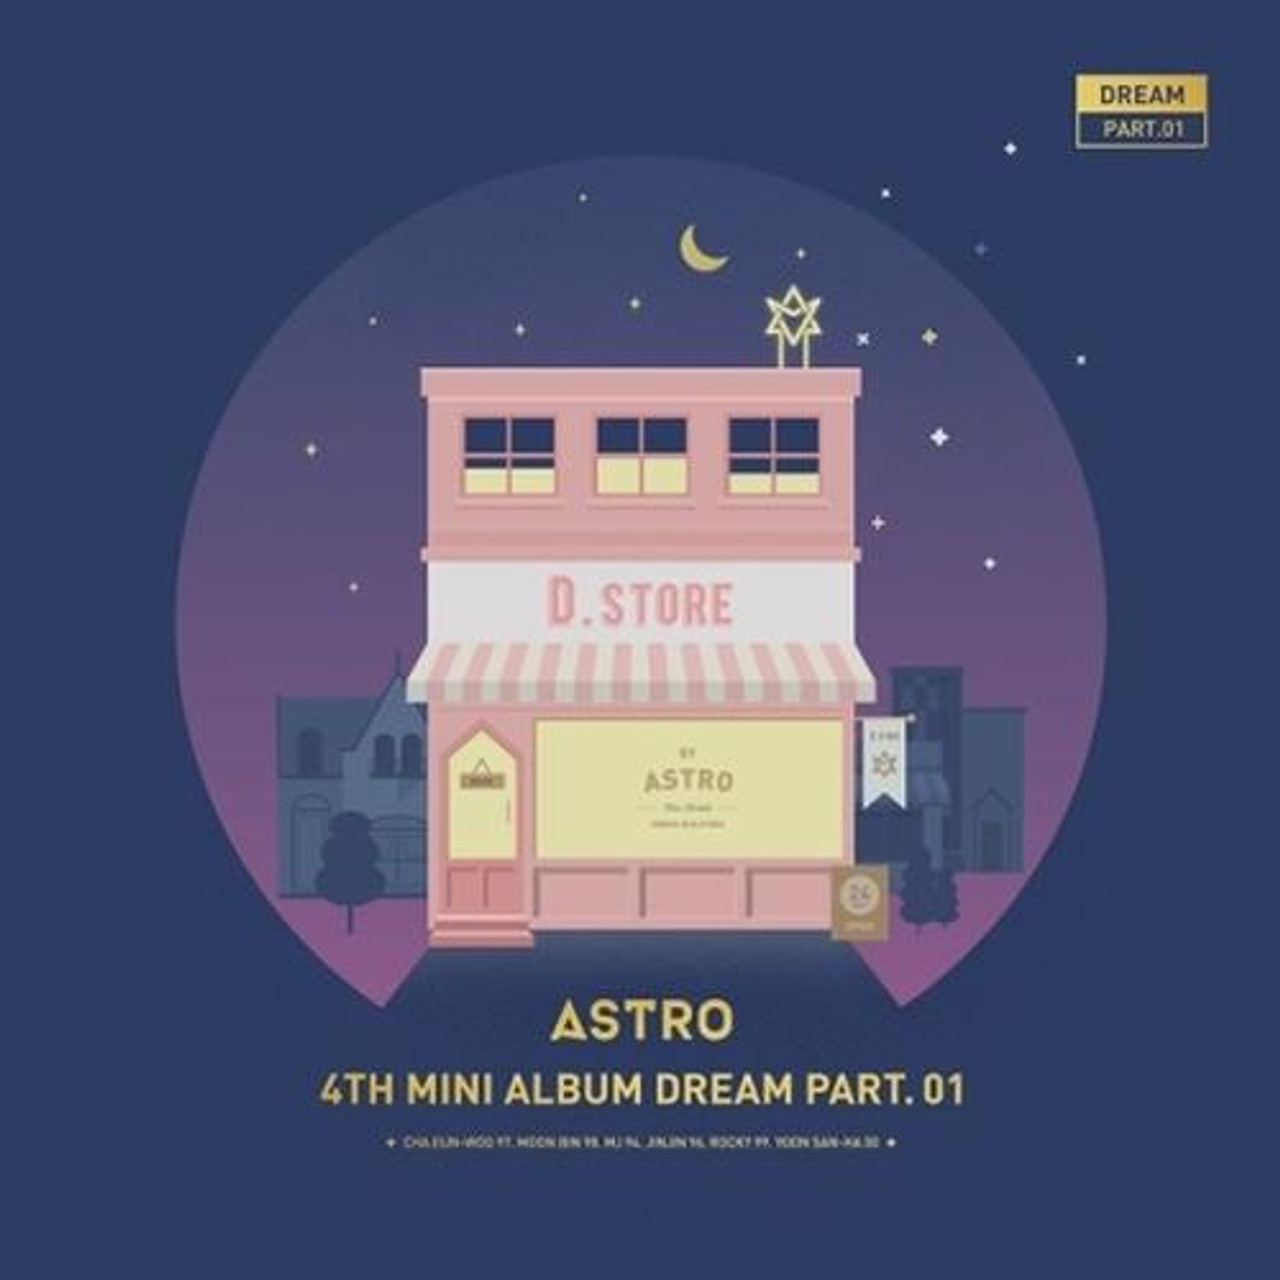 ASTRO 4TH MINI ALBUM part01